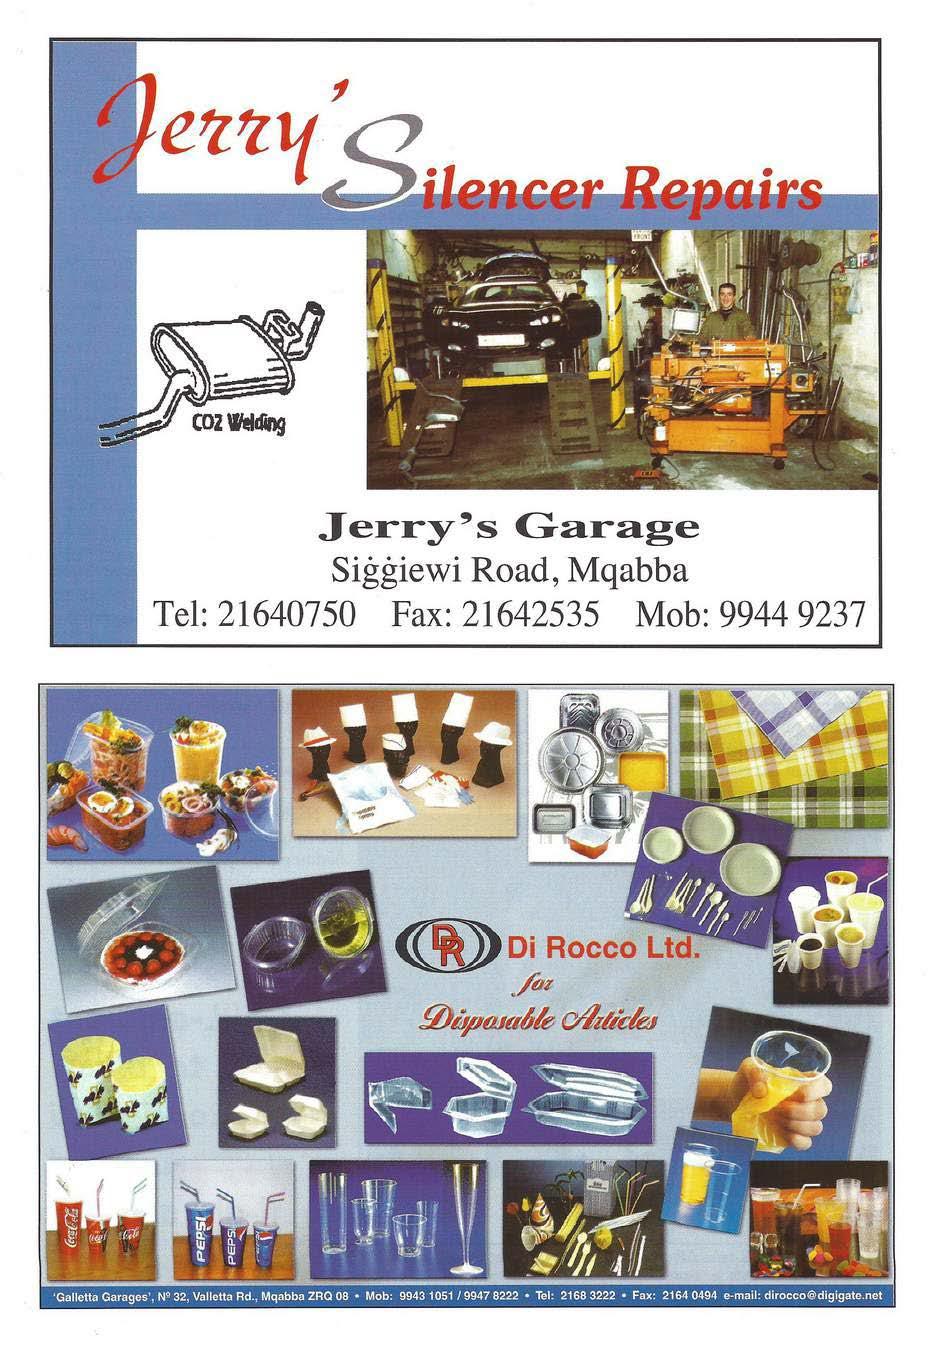 Jerry's Garage Siġġiewi Road, Mqabba Tel: